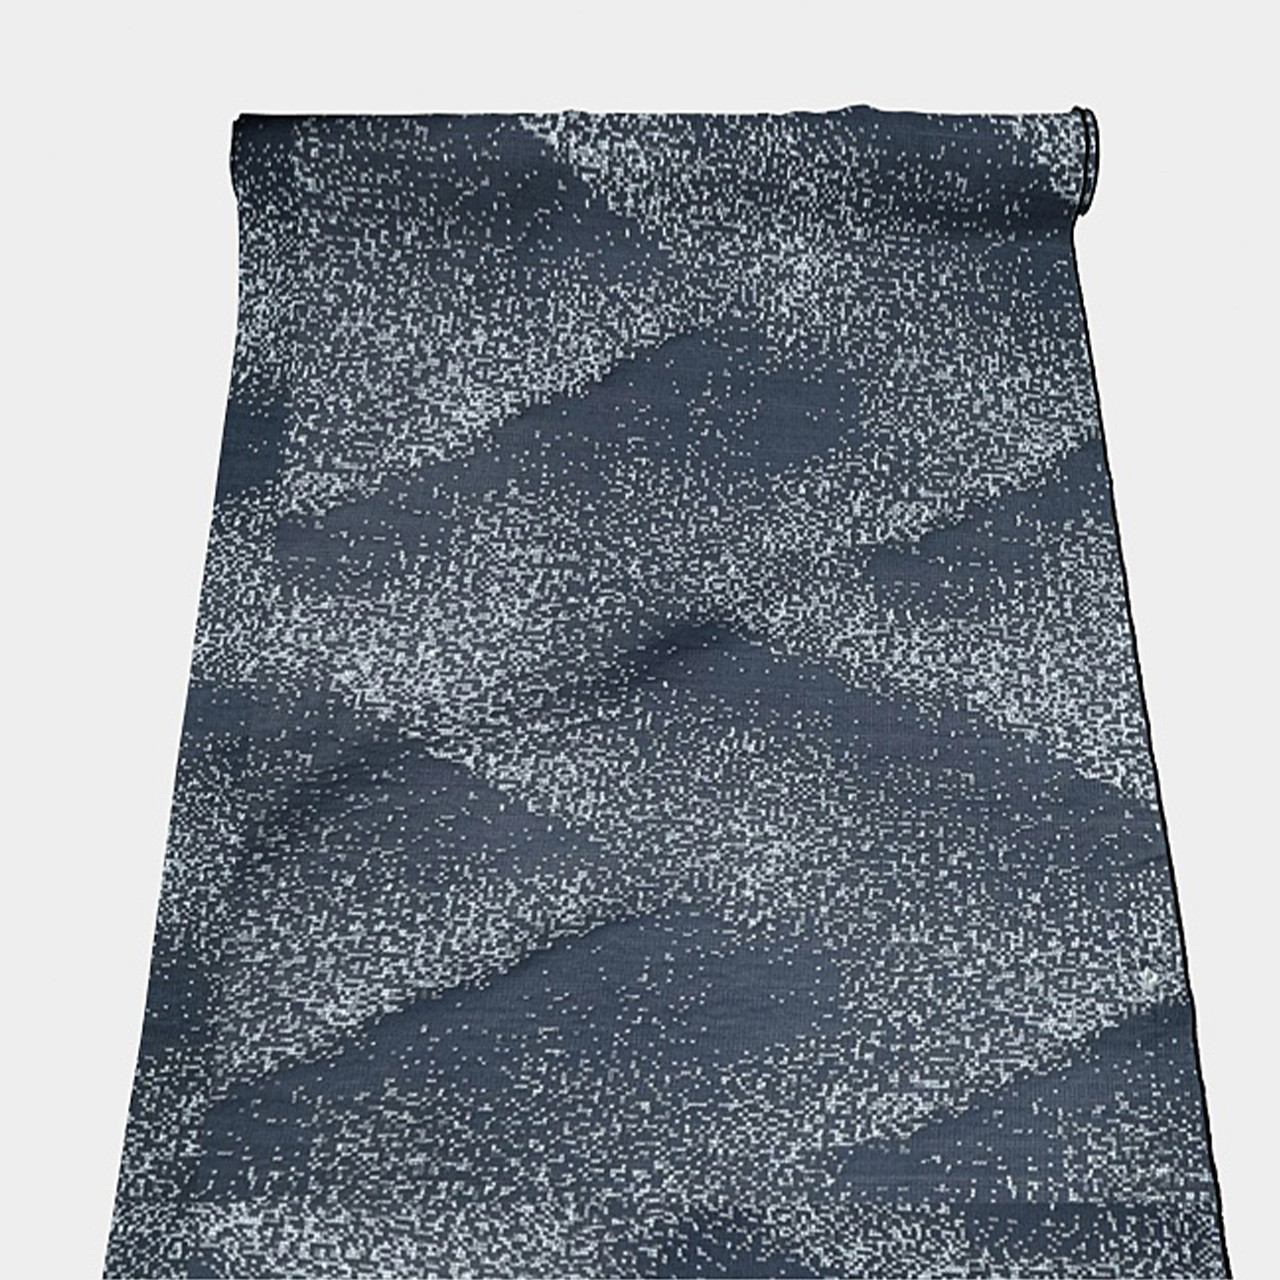 Denim Clift Fabric.